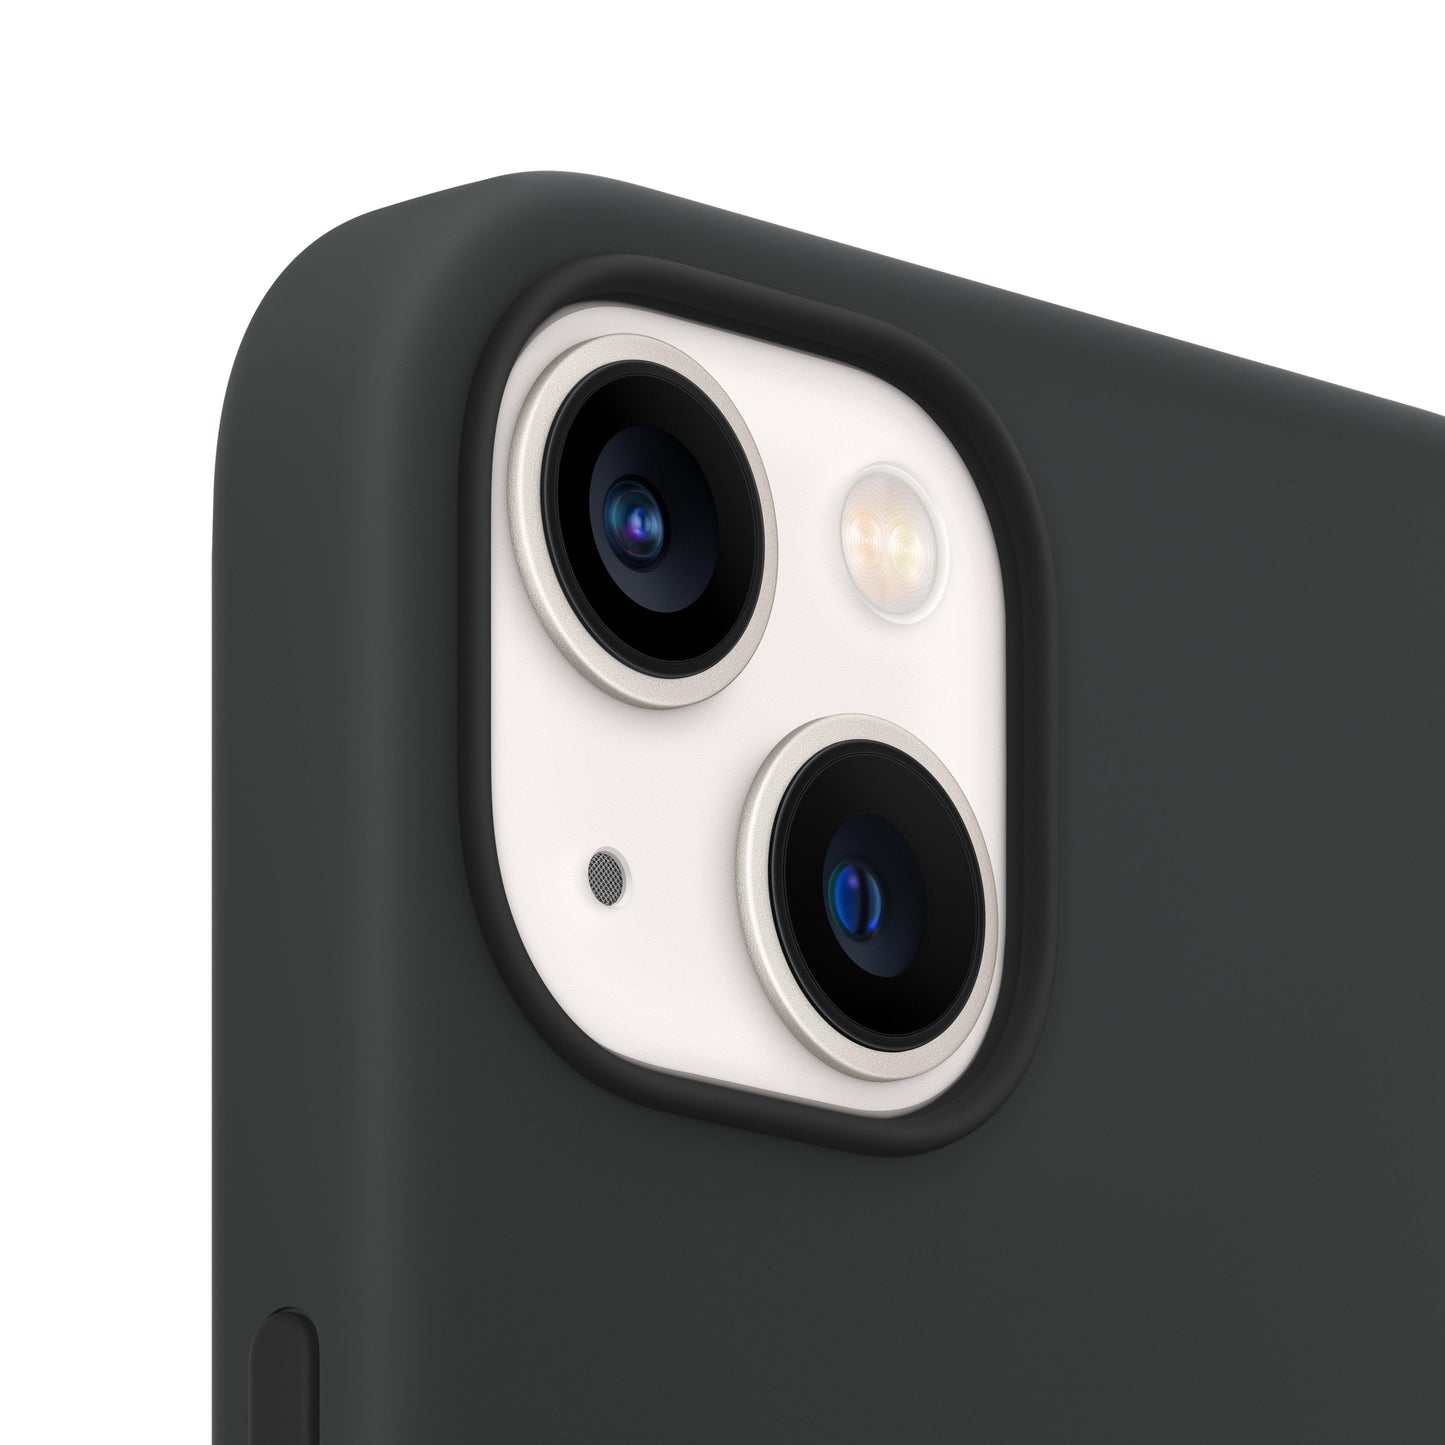 Estuche de silicona con MagSafe para el iPhone 13 mini - Medianoche - Rossellimac